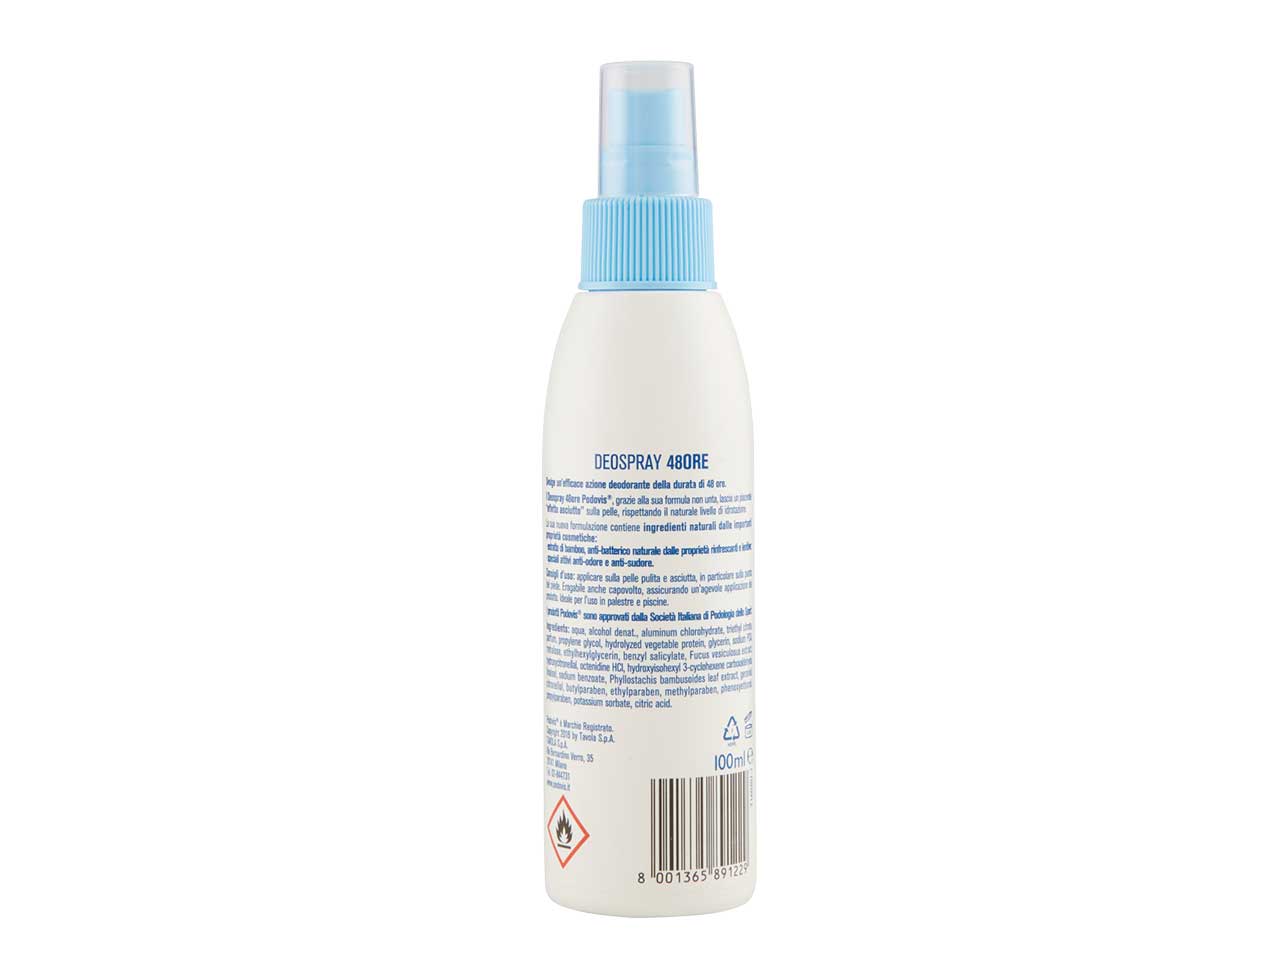 Spray piedi anti odore 2in1 spr4120a